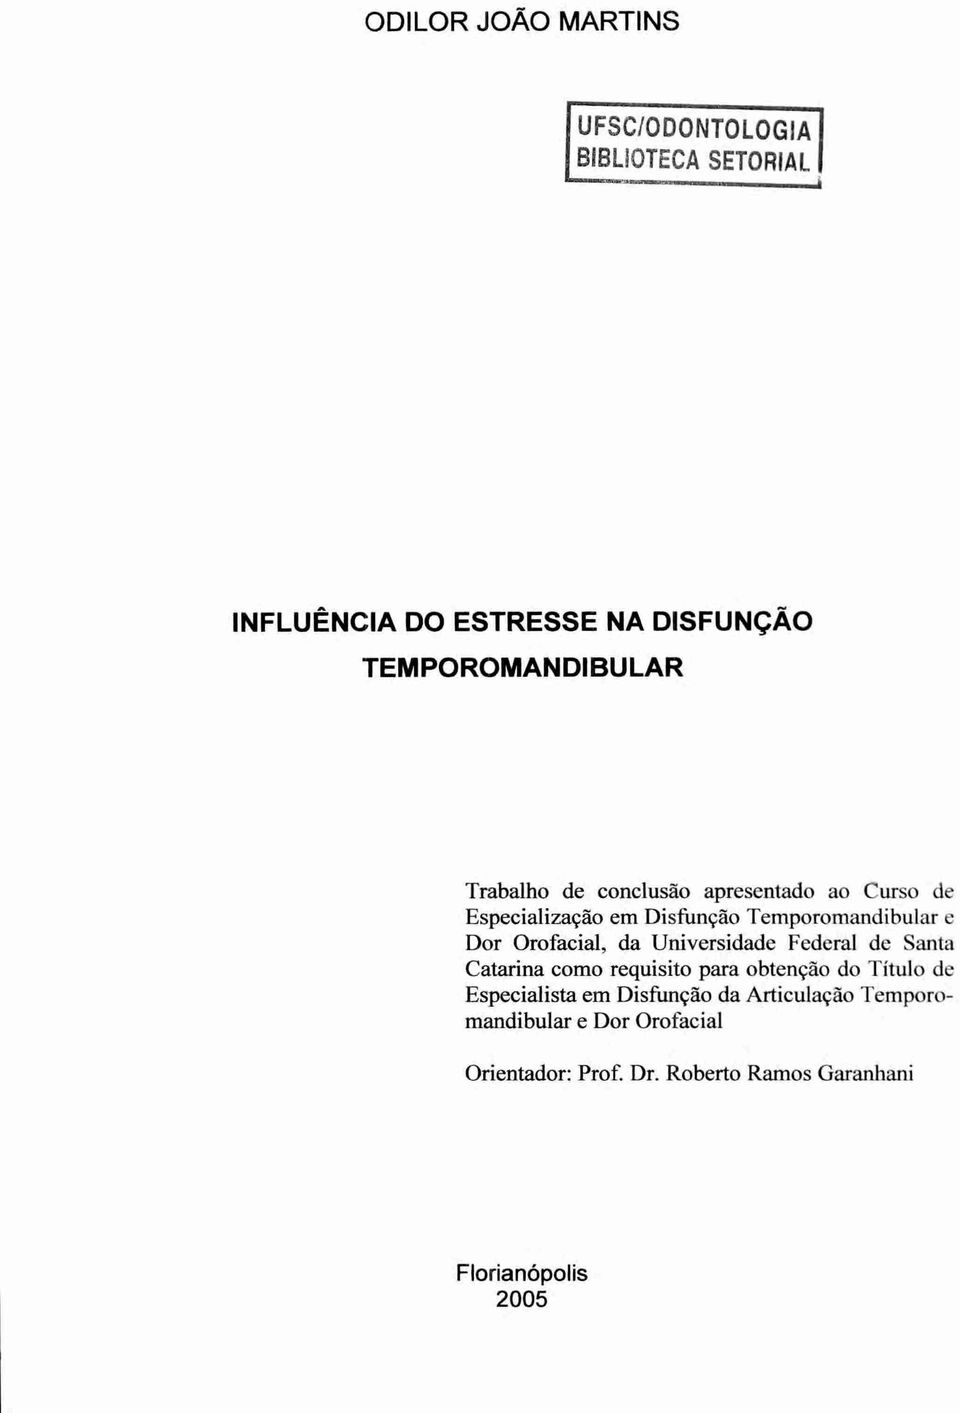 da Universidade Federal de Santa Catarina como requisito para obtenção do Titulo de Especialista em Disfunção